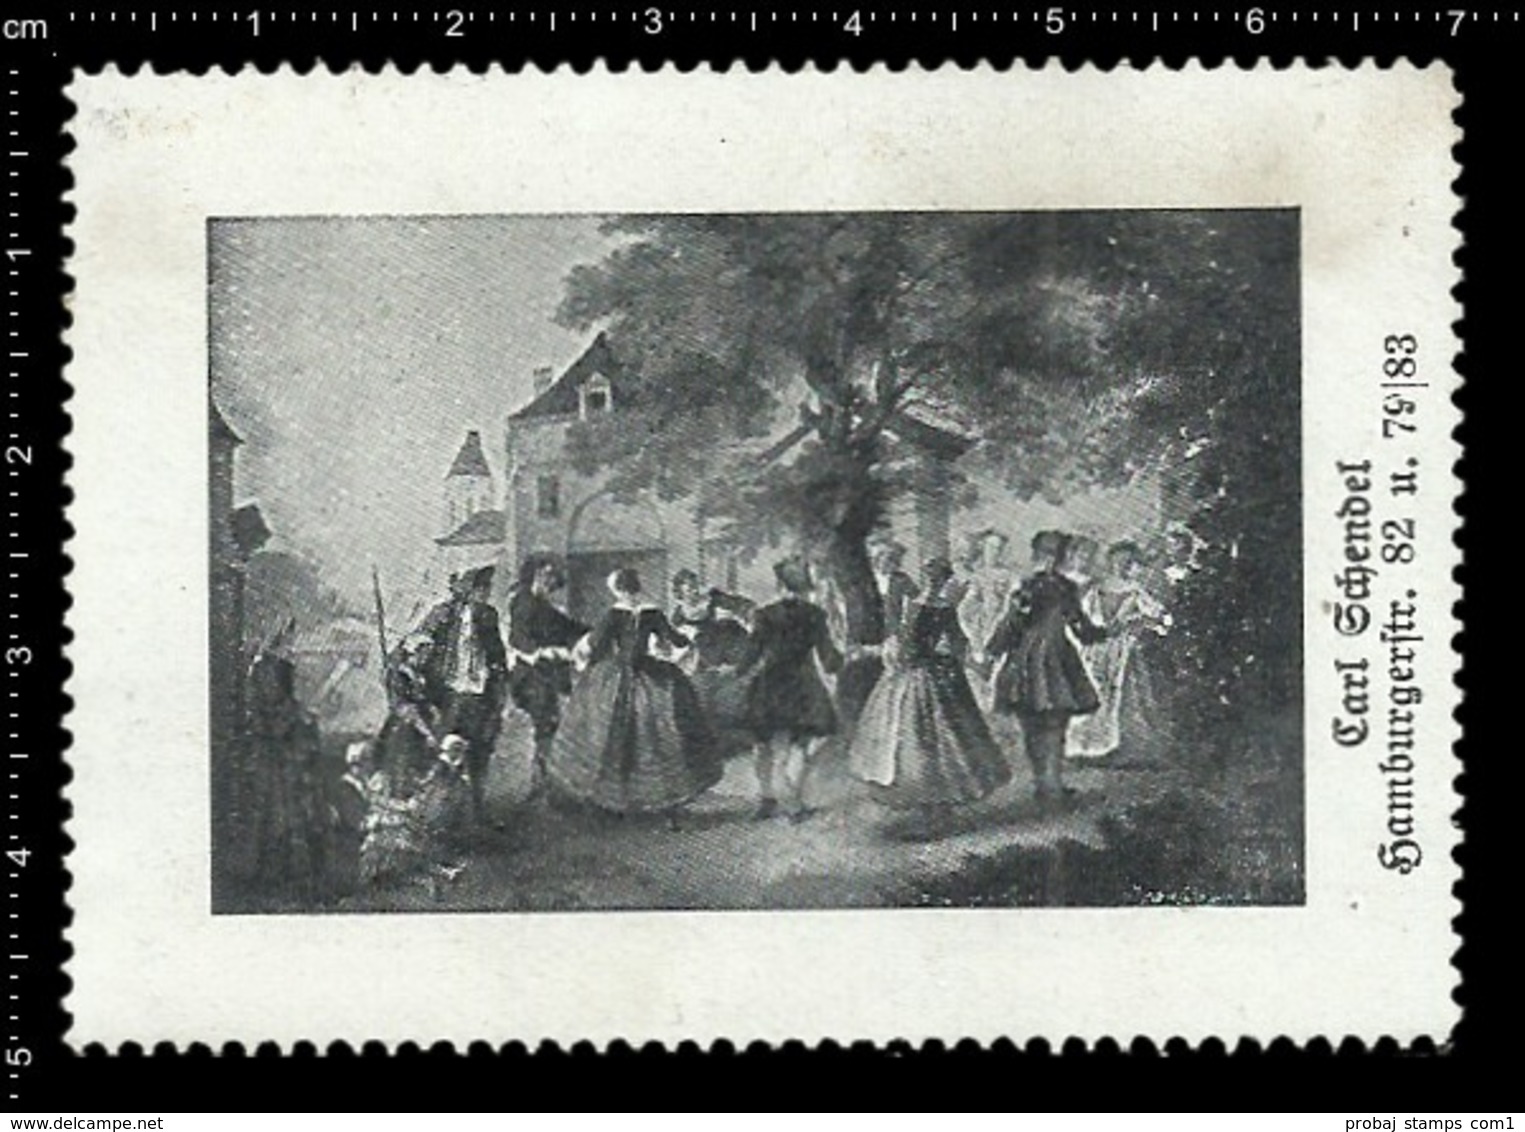 Old Poster Stamp Cinderella Reklamemarke Erinnofili Vignette Dance Tanzen Frau Woman Schendel. - Vignetten (Erinnophilie)